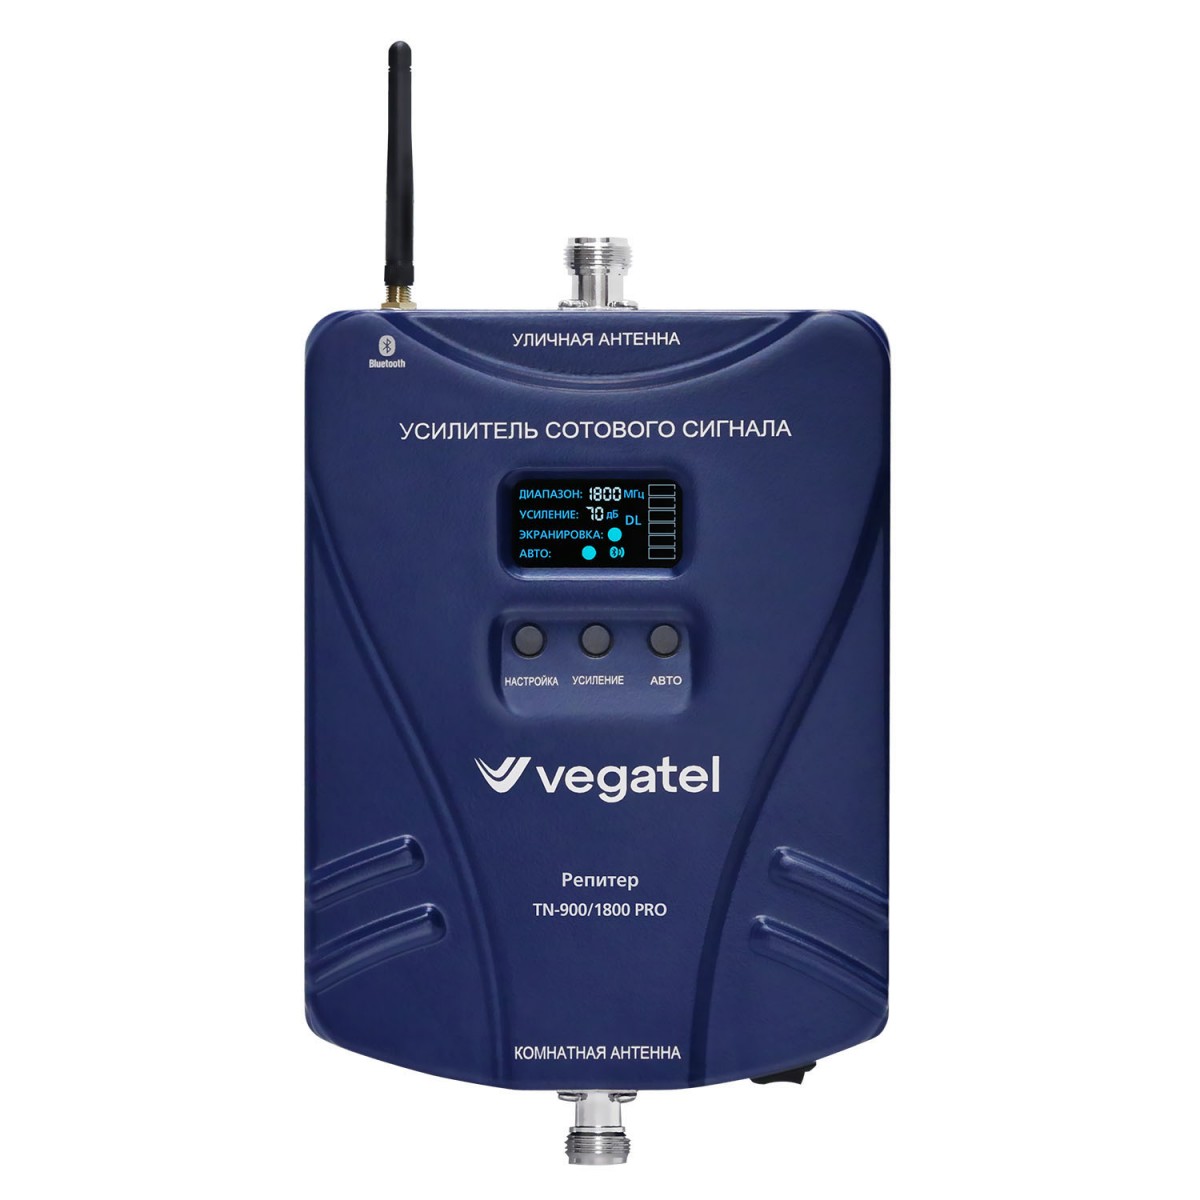 Детальное изображение товара "Комплект усиления сотовой связи Vegatel TN-900/1800 PRO" из каталога оборудования Антенна76